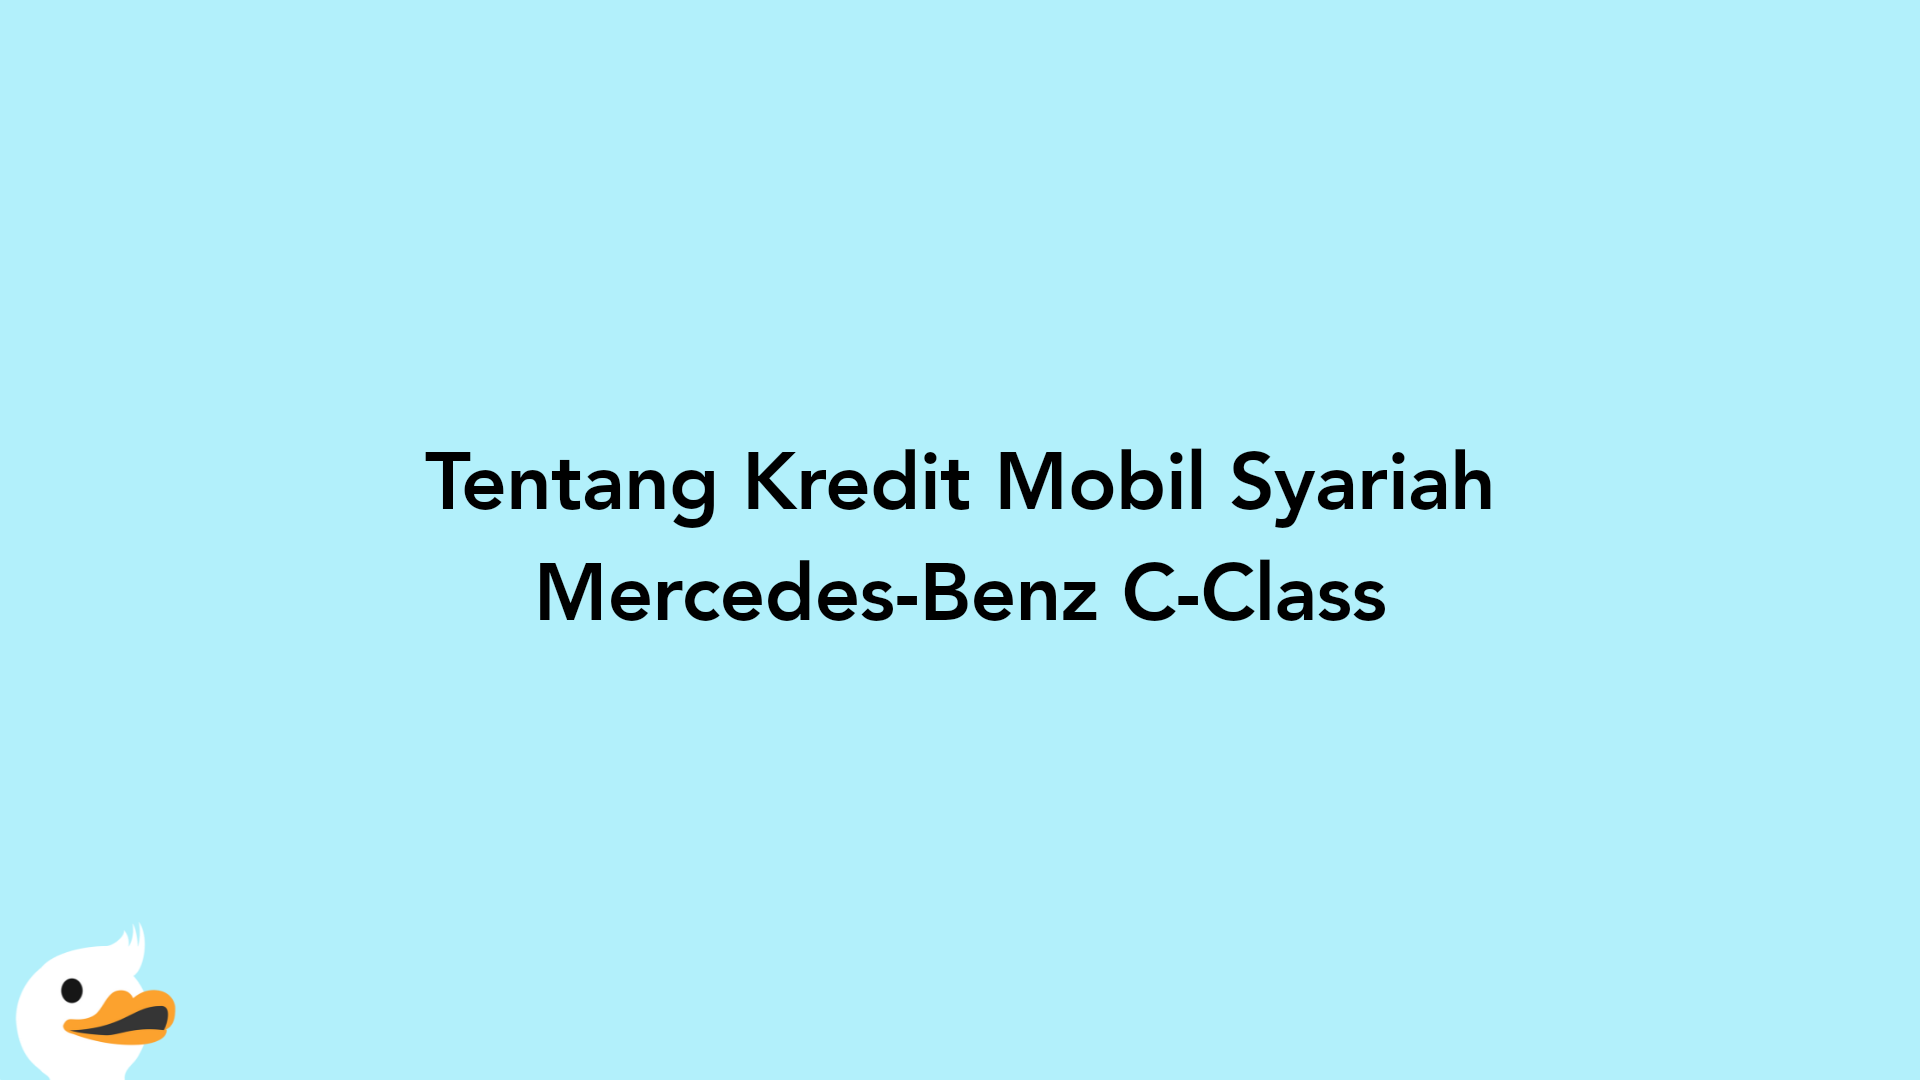 Tentang Kredit Mobil Syariah Mercedes-Benz C-Class